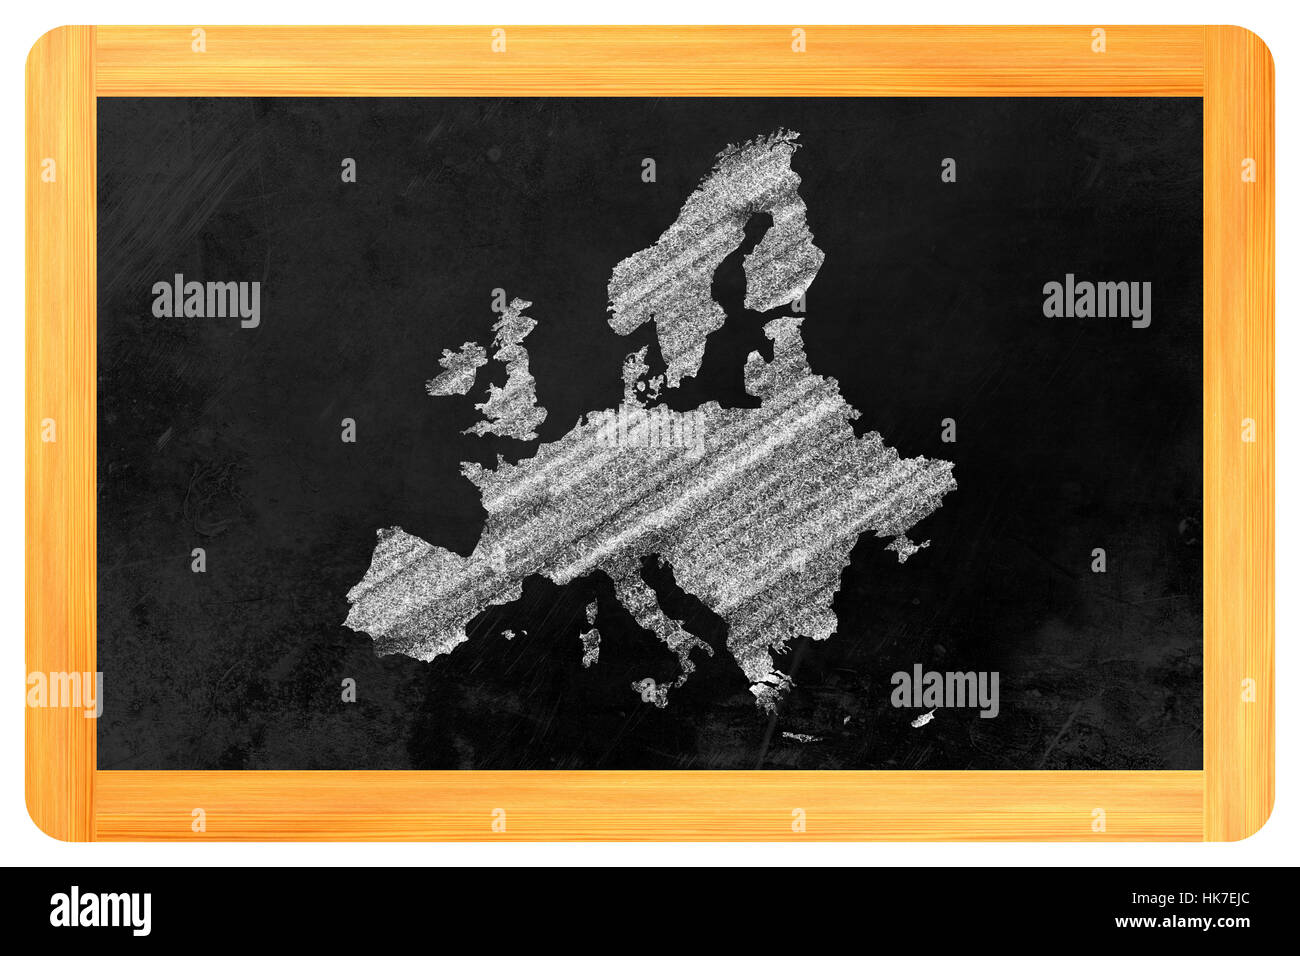 Europa, la Unión Europea, la política, la economía, uniéndose, viaje, viaje, viaje, Foto de stock